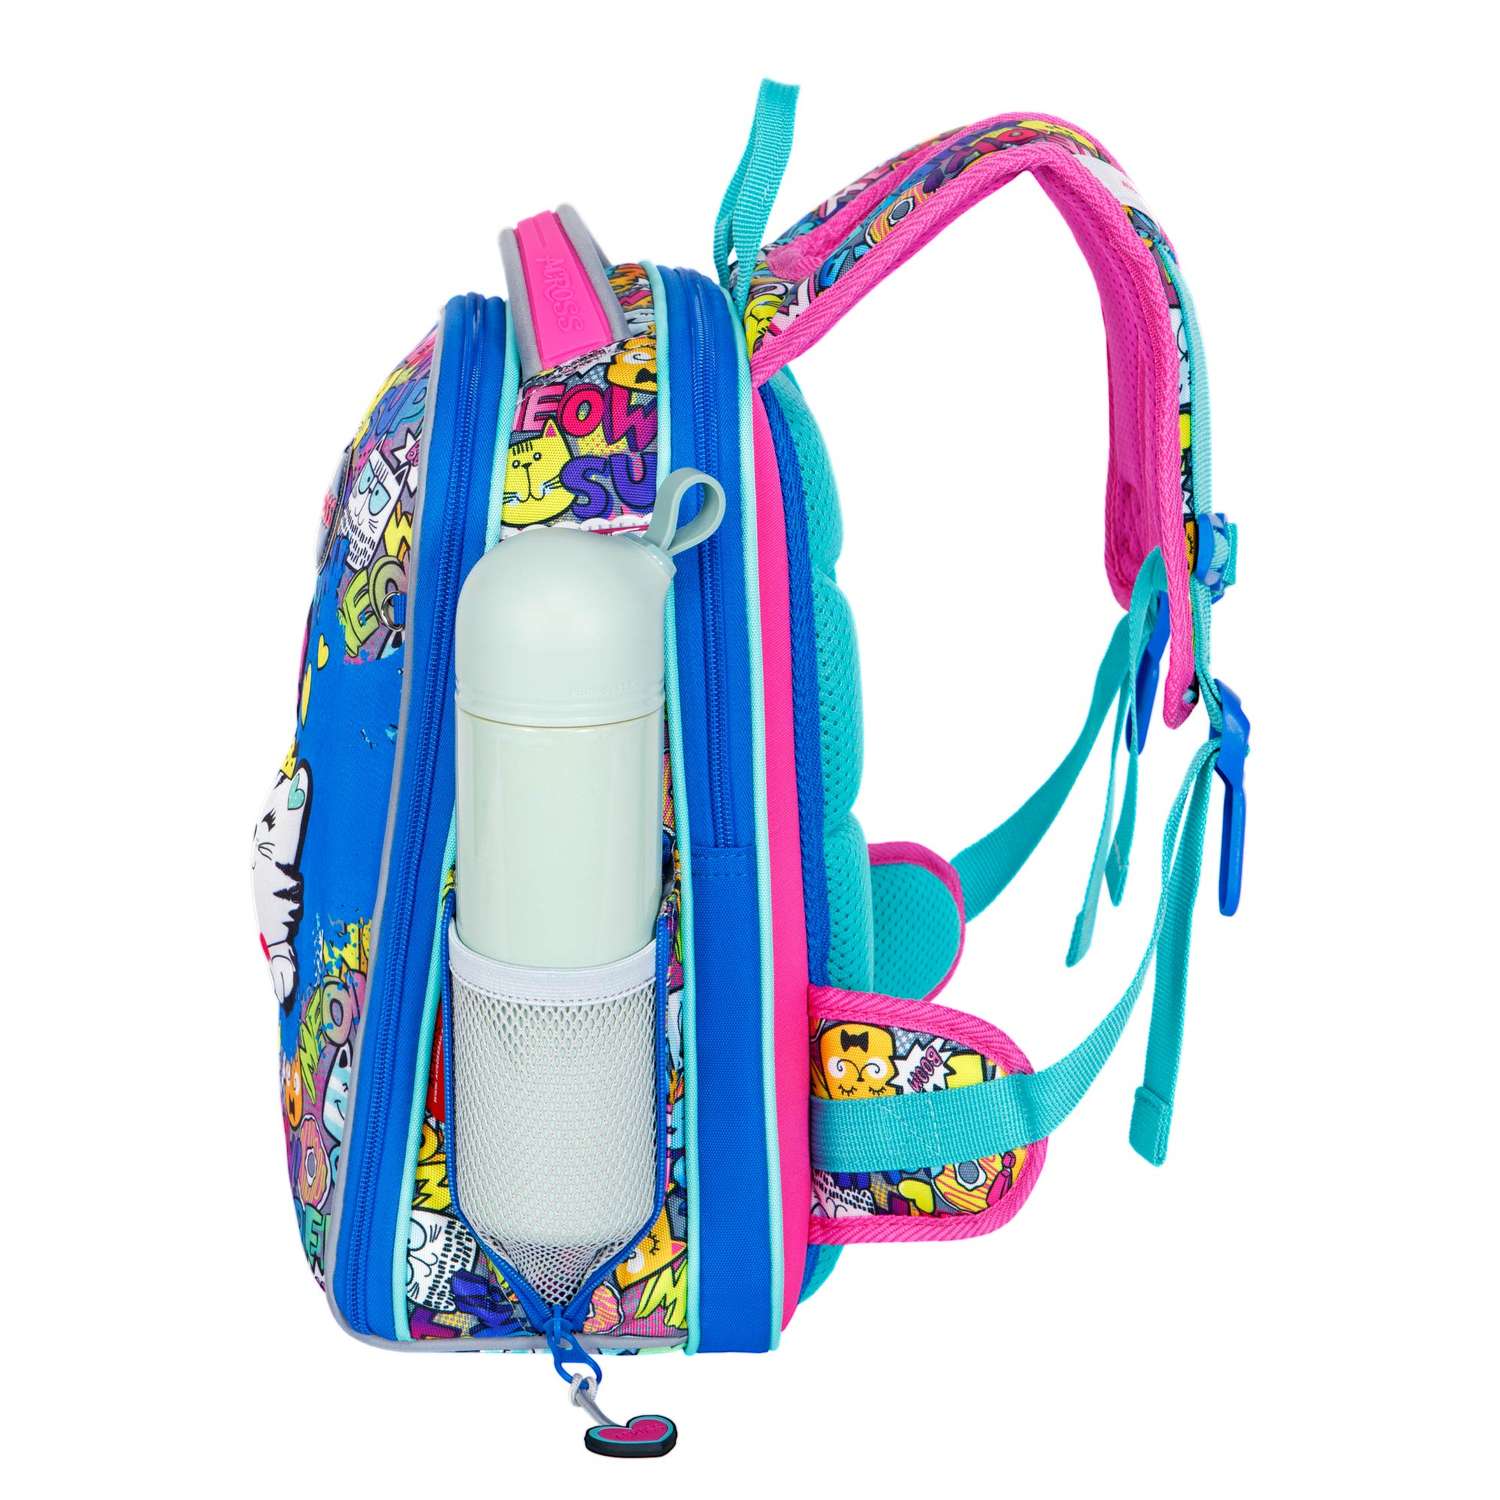 Рюкзак школьный ACROSS с наполнением: мешок для обуви пенал папка и брелок - фото 4